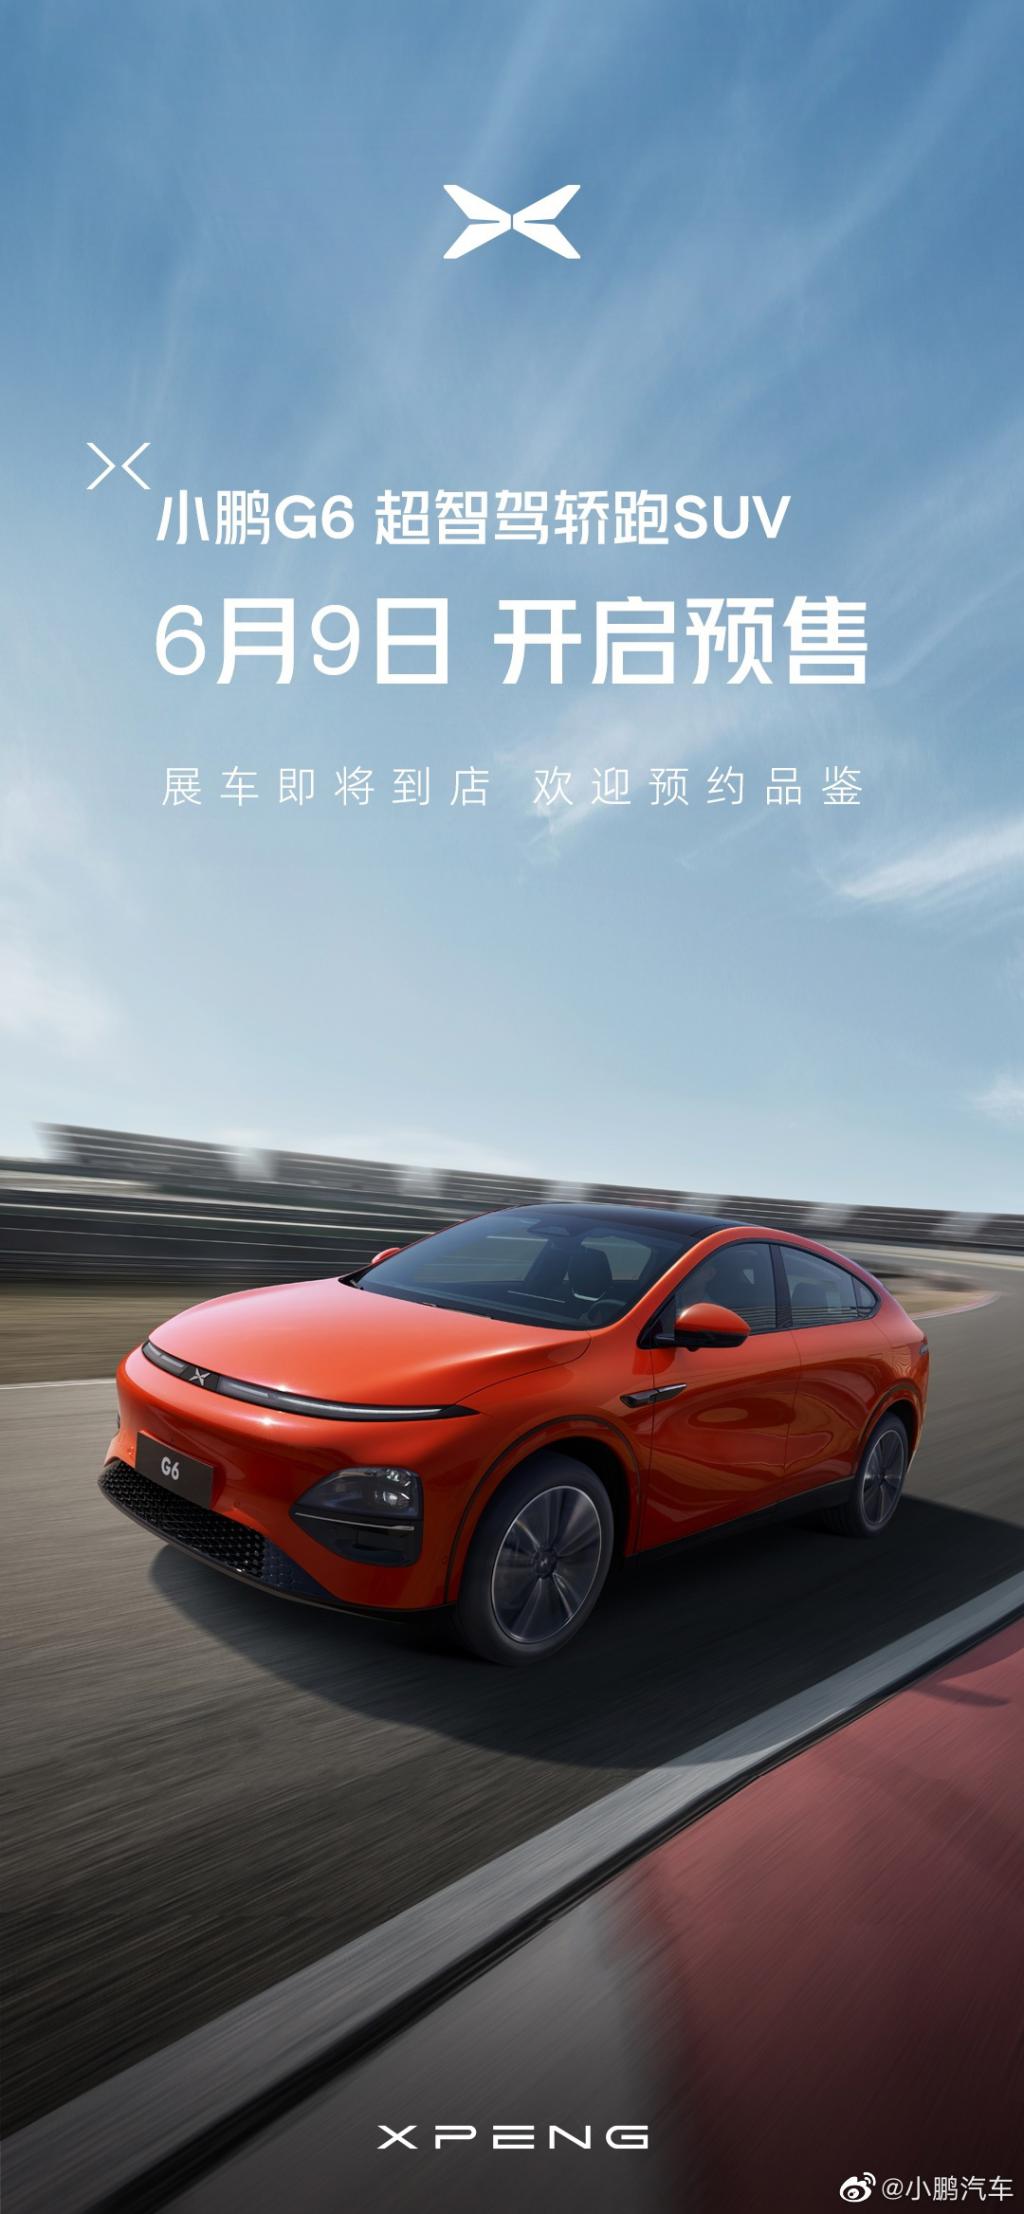 小鹏 G6 轿跑 SUV 车型官宣 6 月 9 日开启预售：配 800V 快充